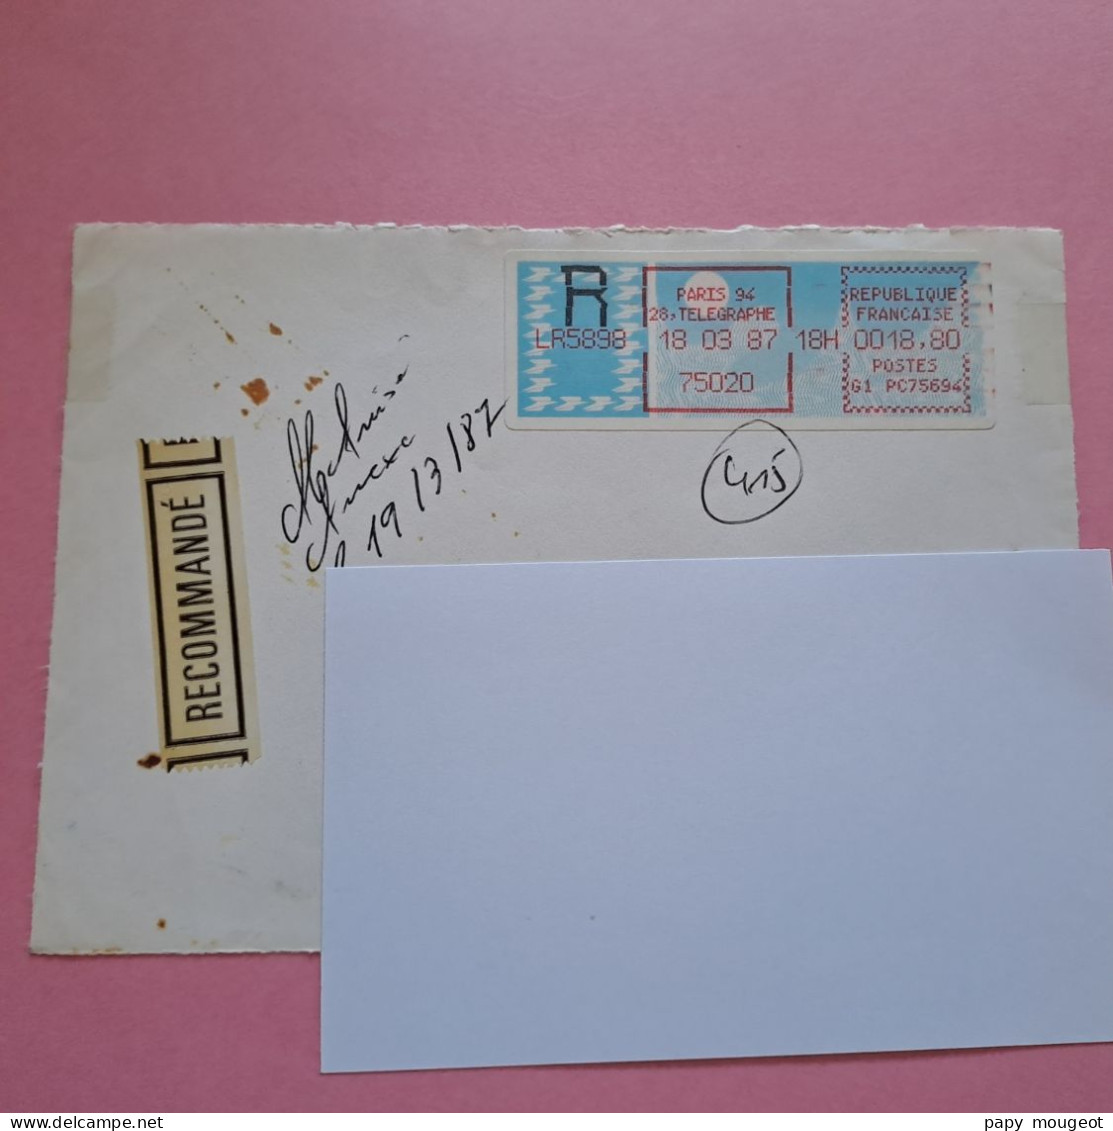 Paris 94 - 75020 - 18-03-1987 LR Poste G1 PC75694 - Devant D'enveloppe - 1985 « Carrier » Paper